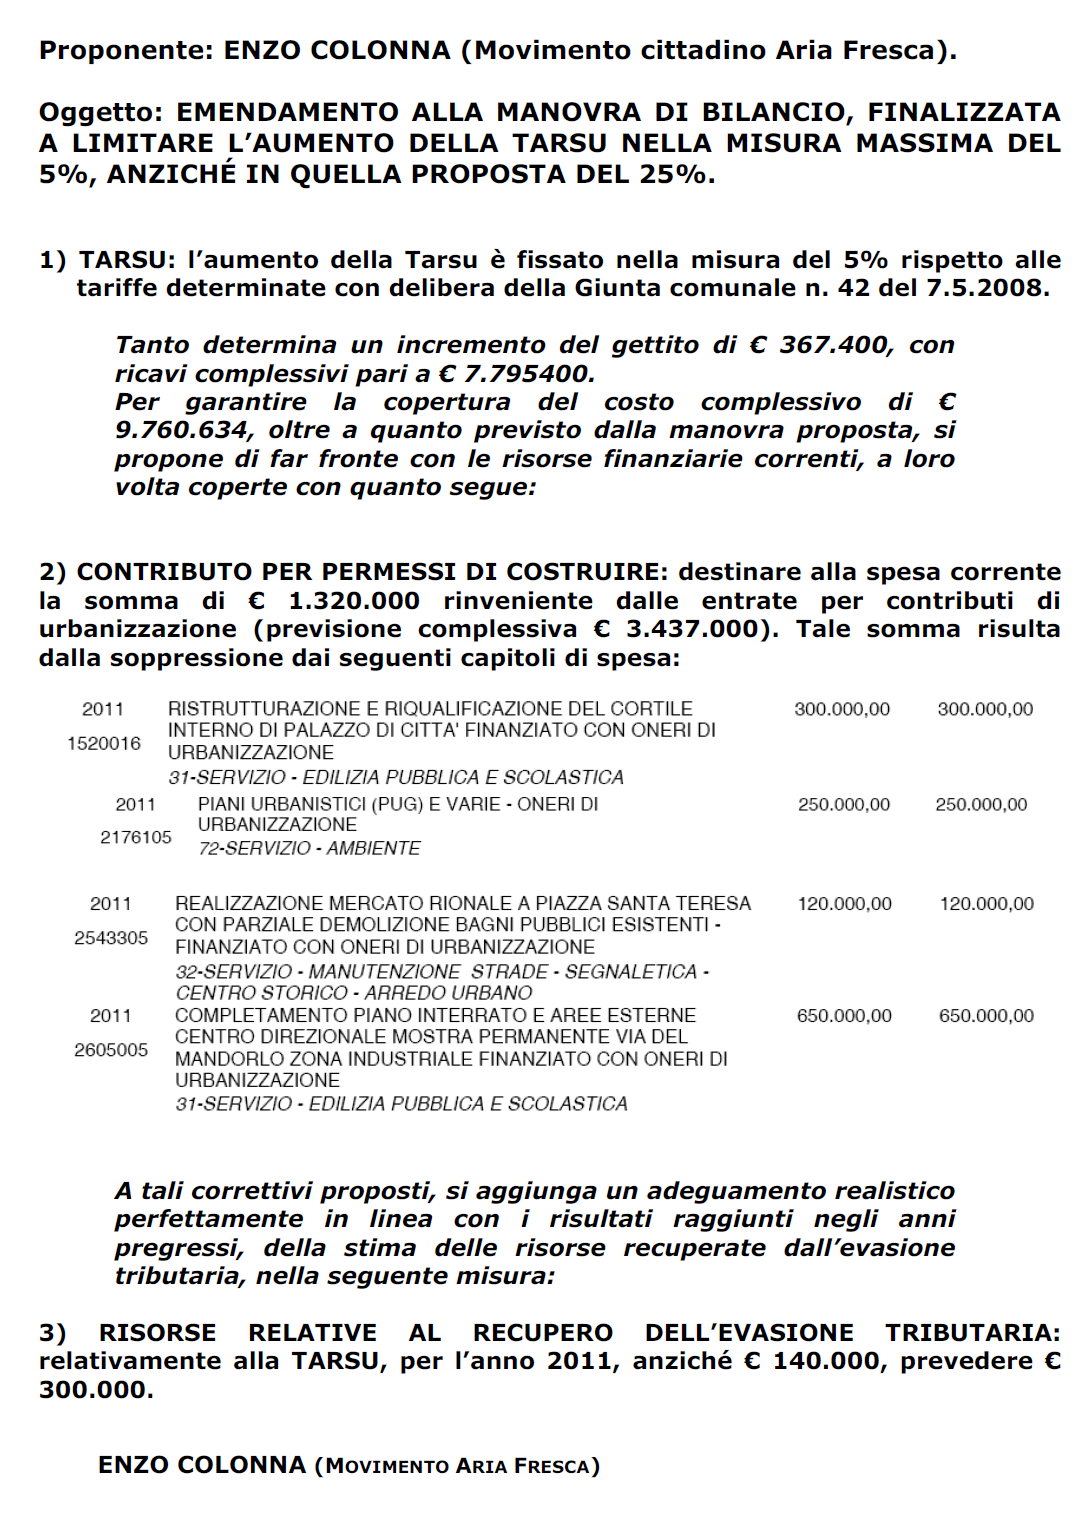 23.06.11_-_emendamento_bilancio_tarsu.png